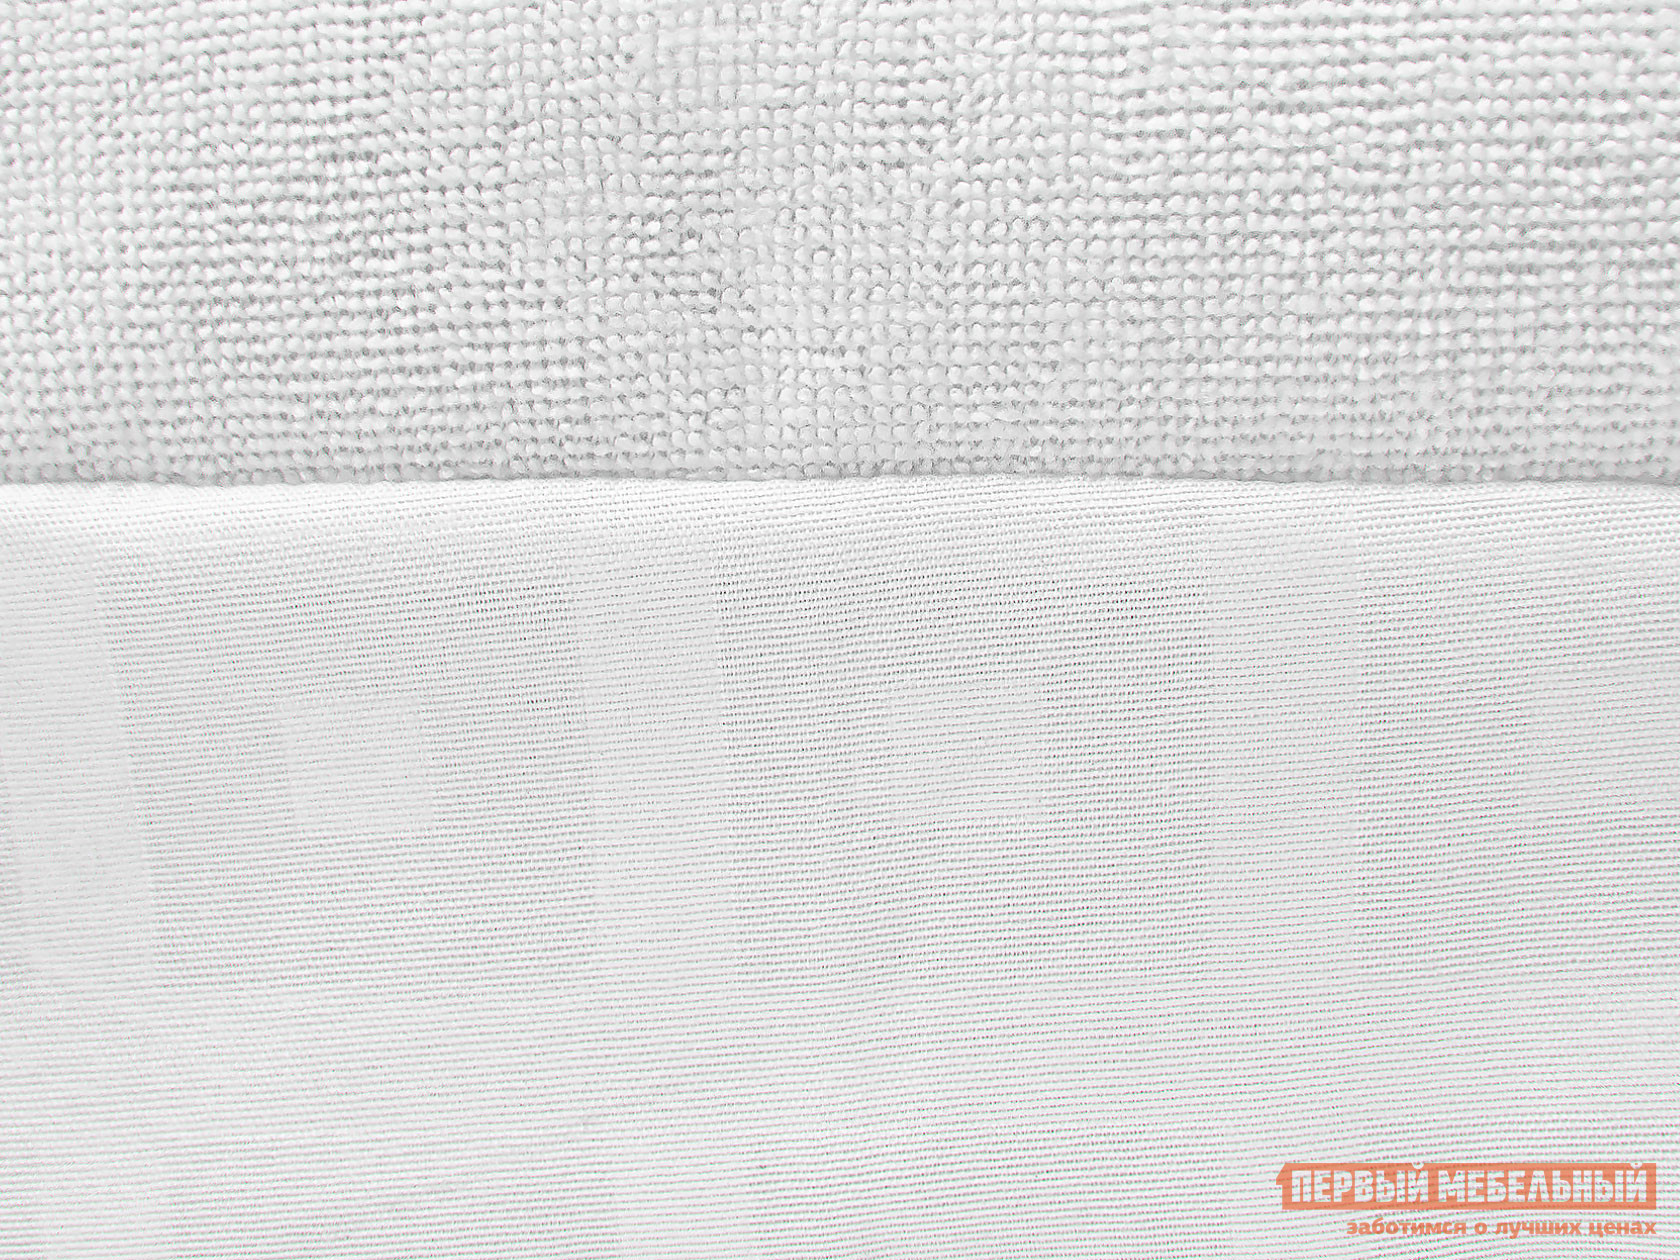 Чехол для матраса  Фулл протекшн с бортом Белый махровый, 1200 Х 2000 мм от Первый Мебельный